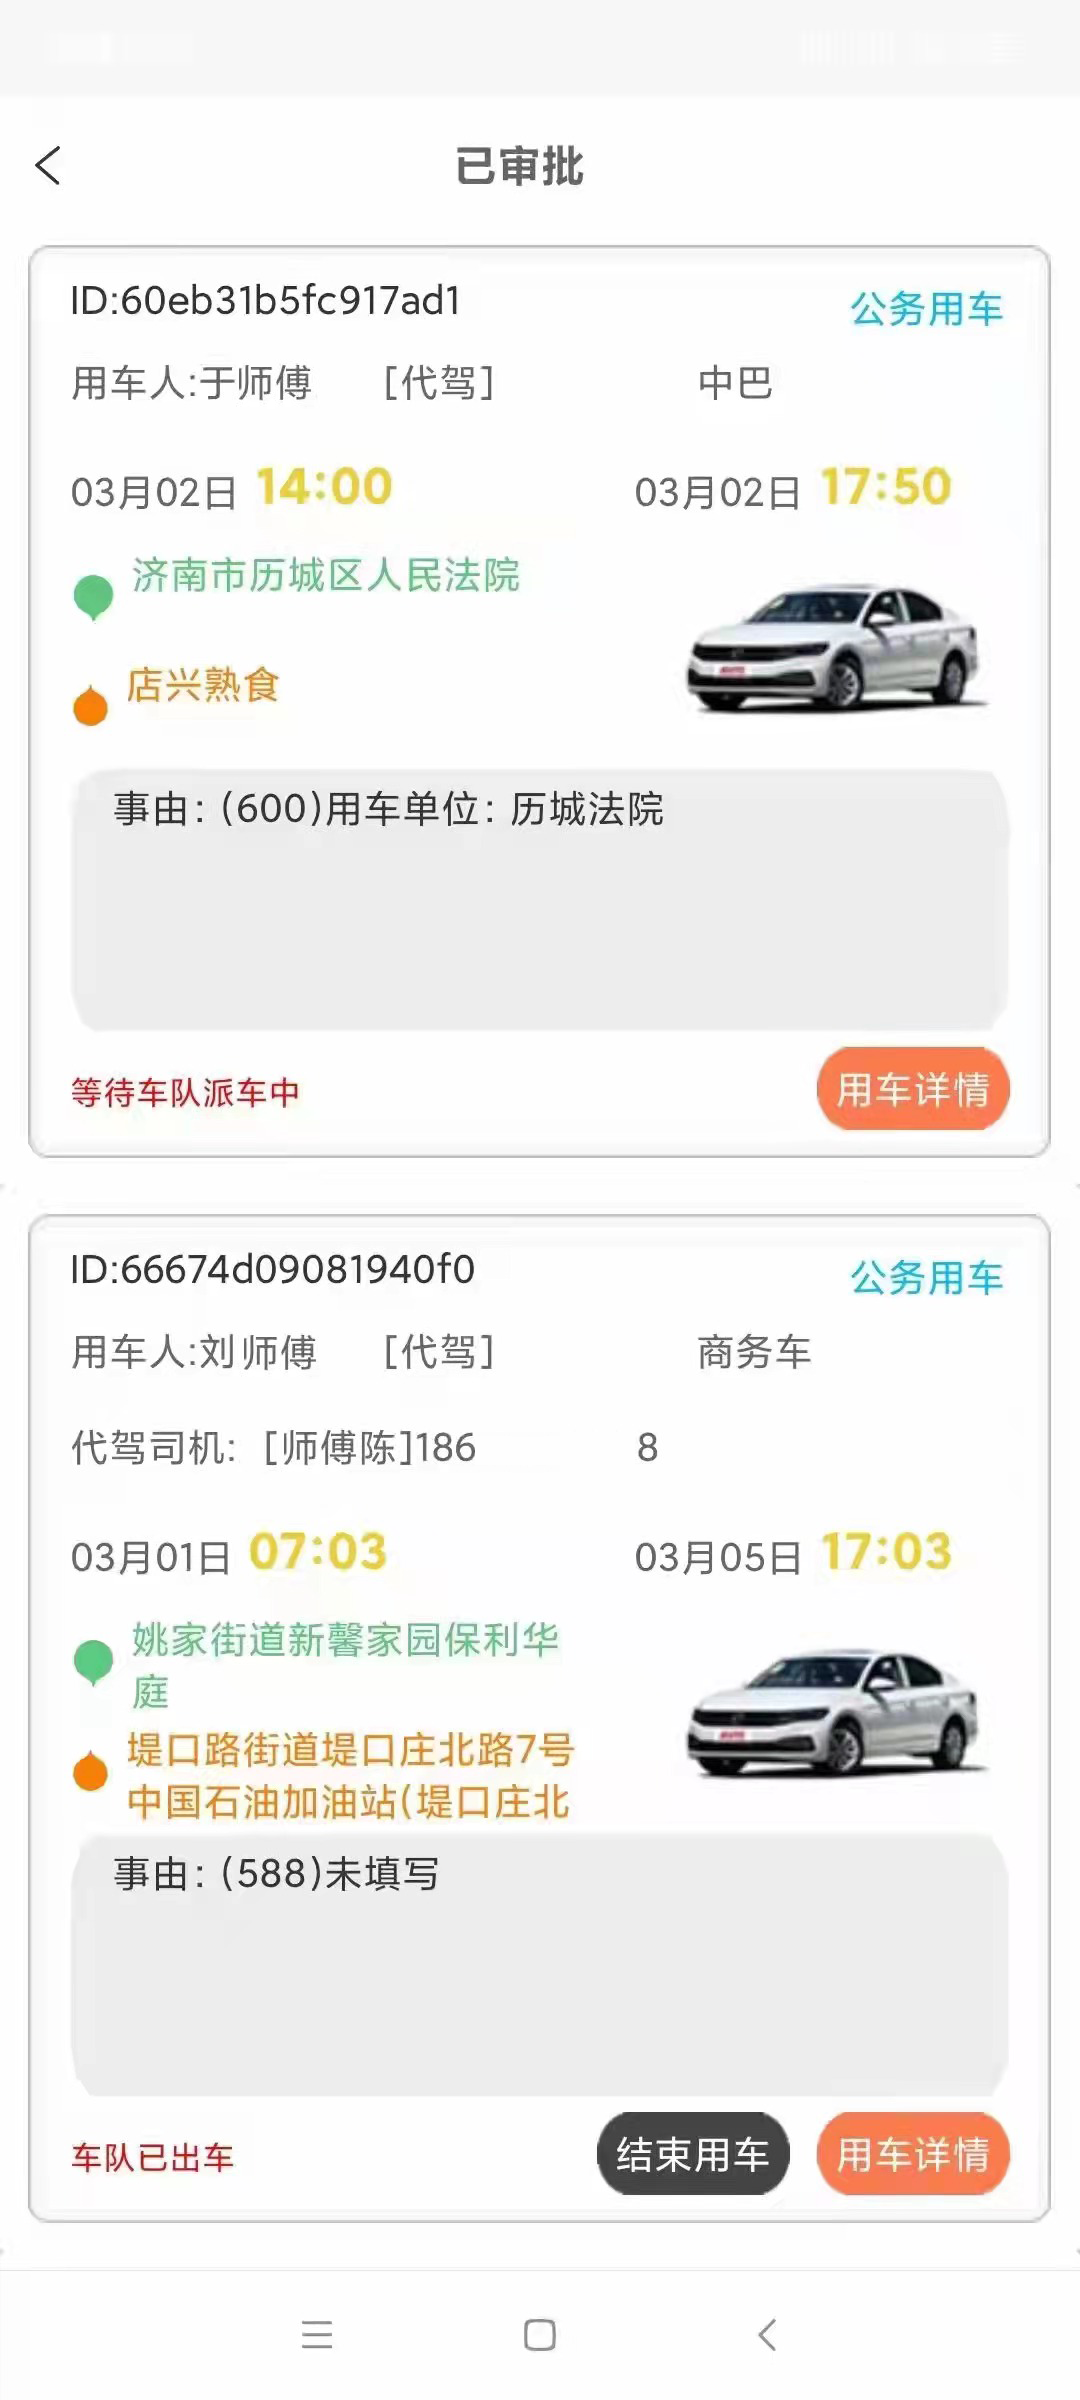 西安公務車派遣系統拼车系统app小程序源码